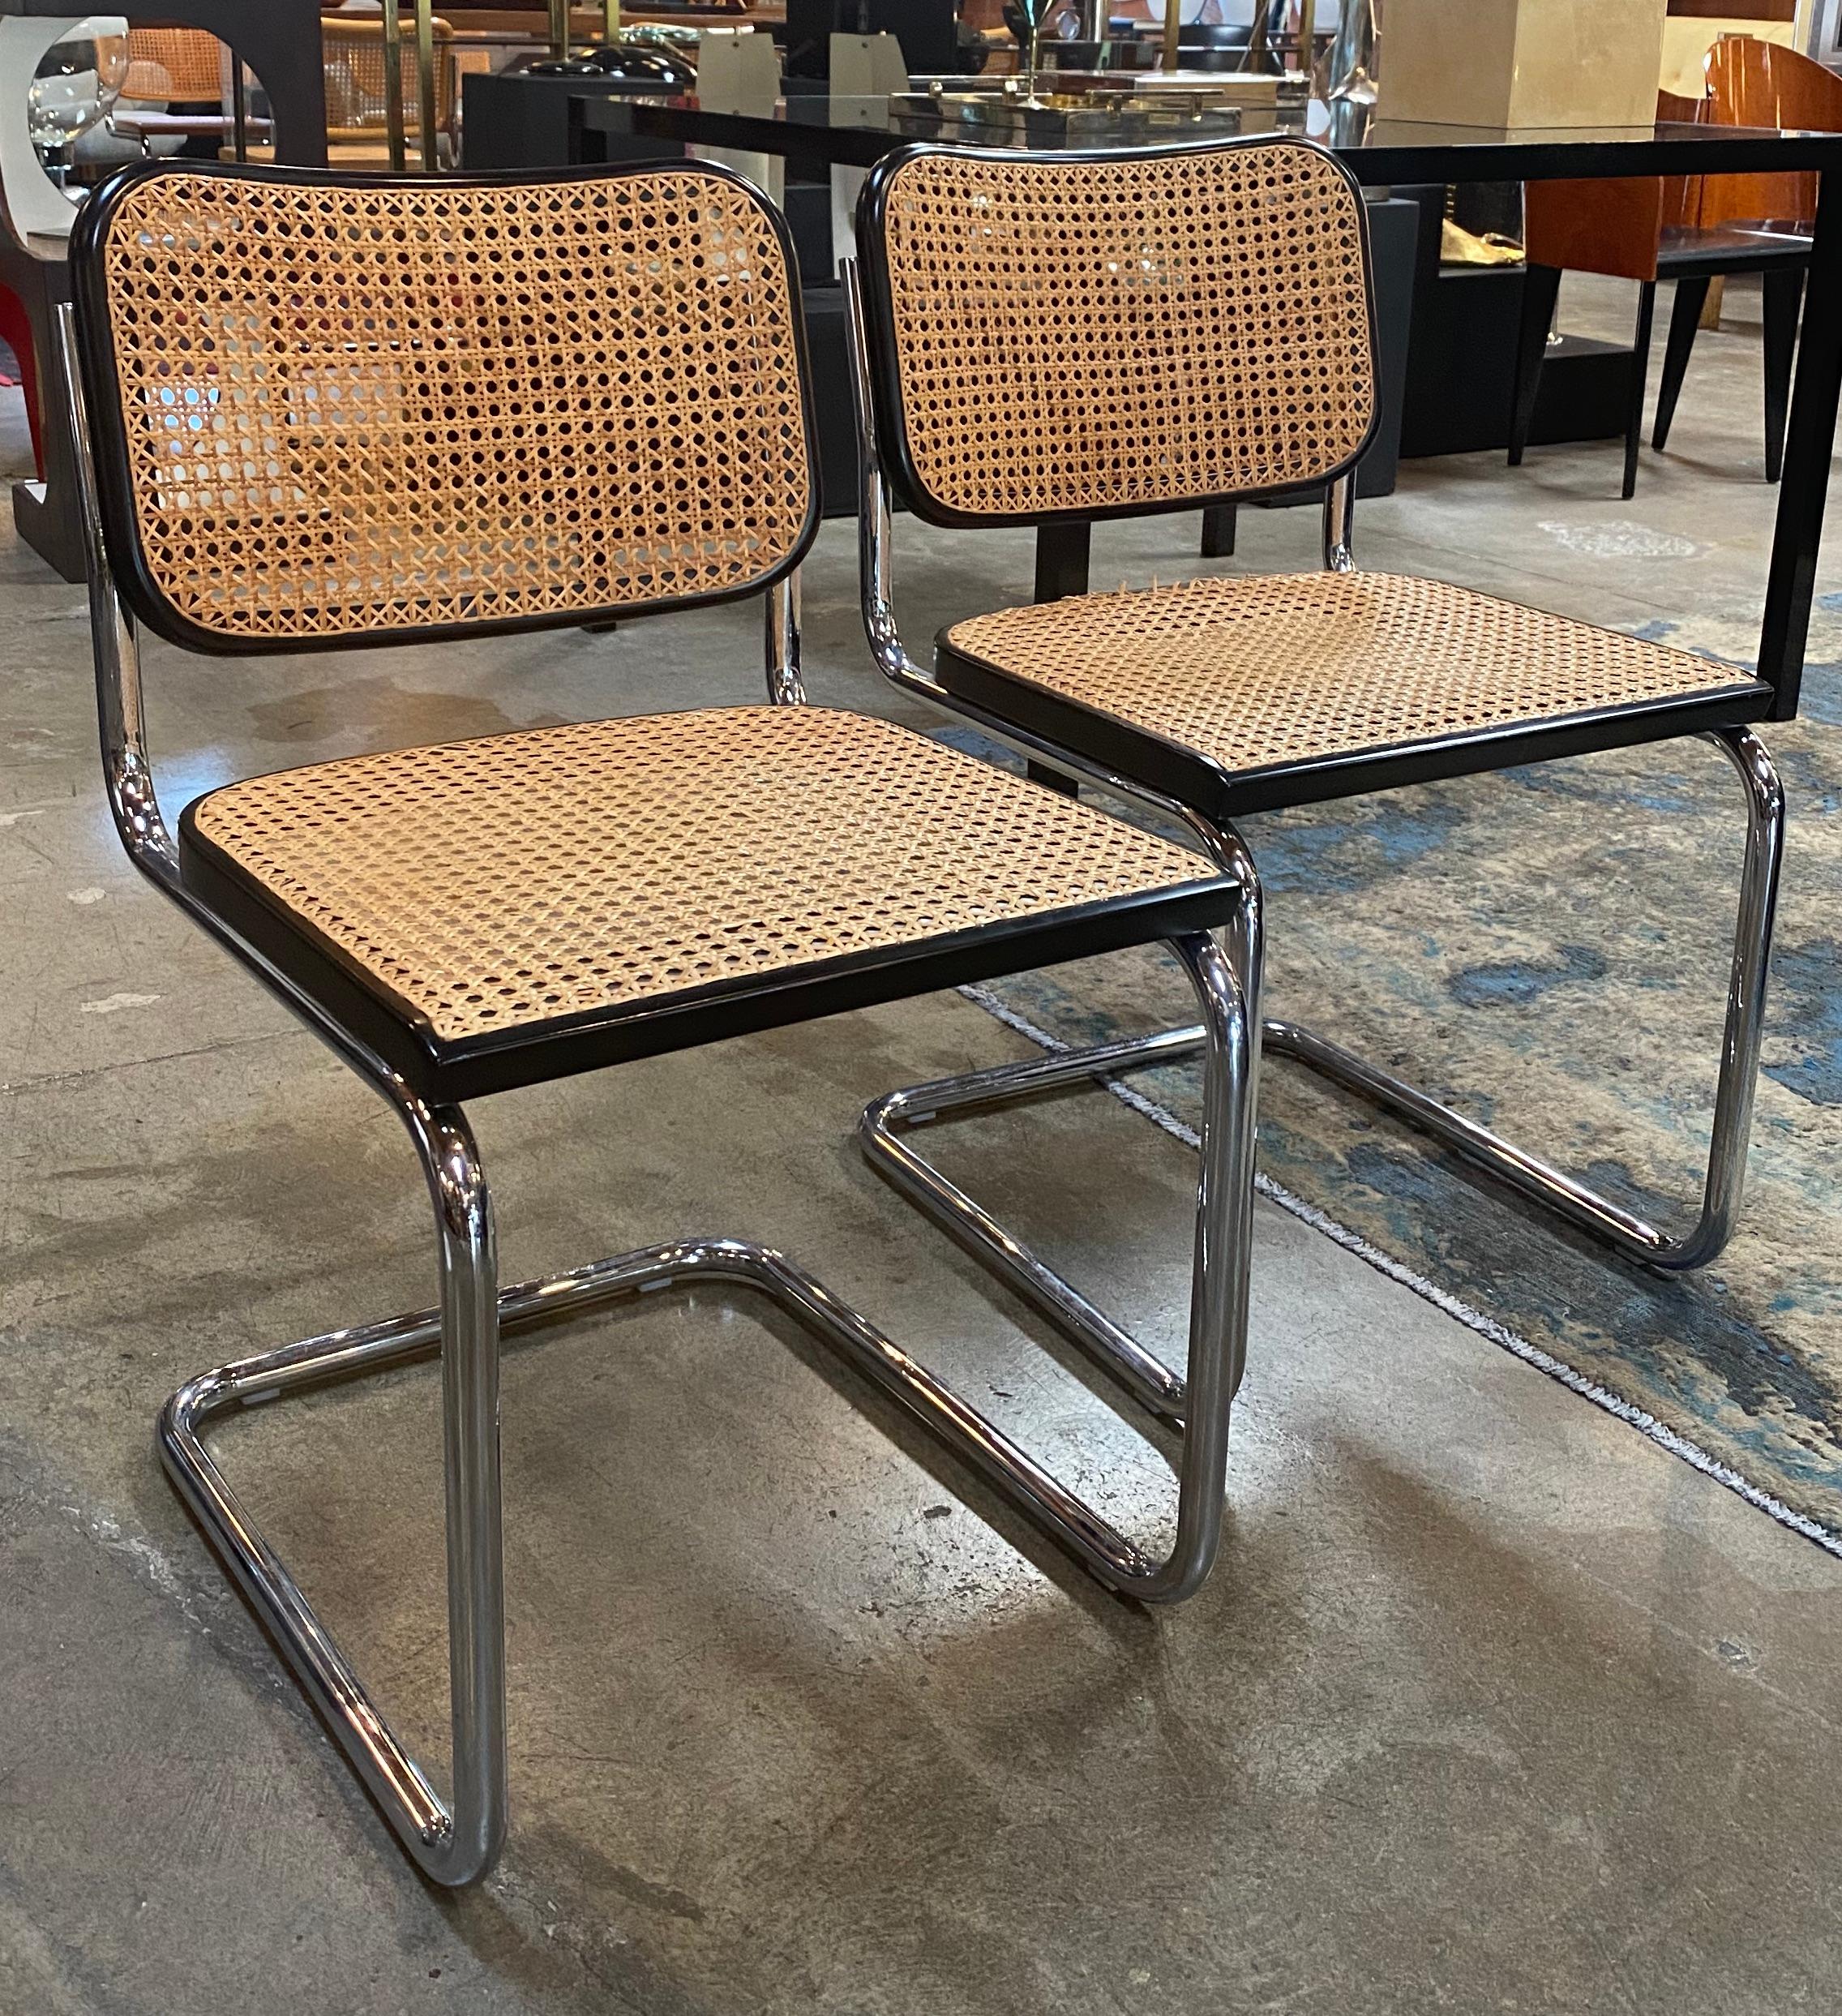 Satz von 2 Esszimmerstuhl Cane Cesca ! atemberaubend

Der Cesca-Stuhl wurde 1928 von Marcel Breuer aus Stahlrohr entworfen. Es wurde Cesca genannt, als Hommage an Breuers Adoptivtochter Francesca (Spitzname Cheska).
Im Jahr 1968 wurde der Stuhl